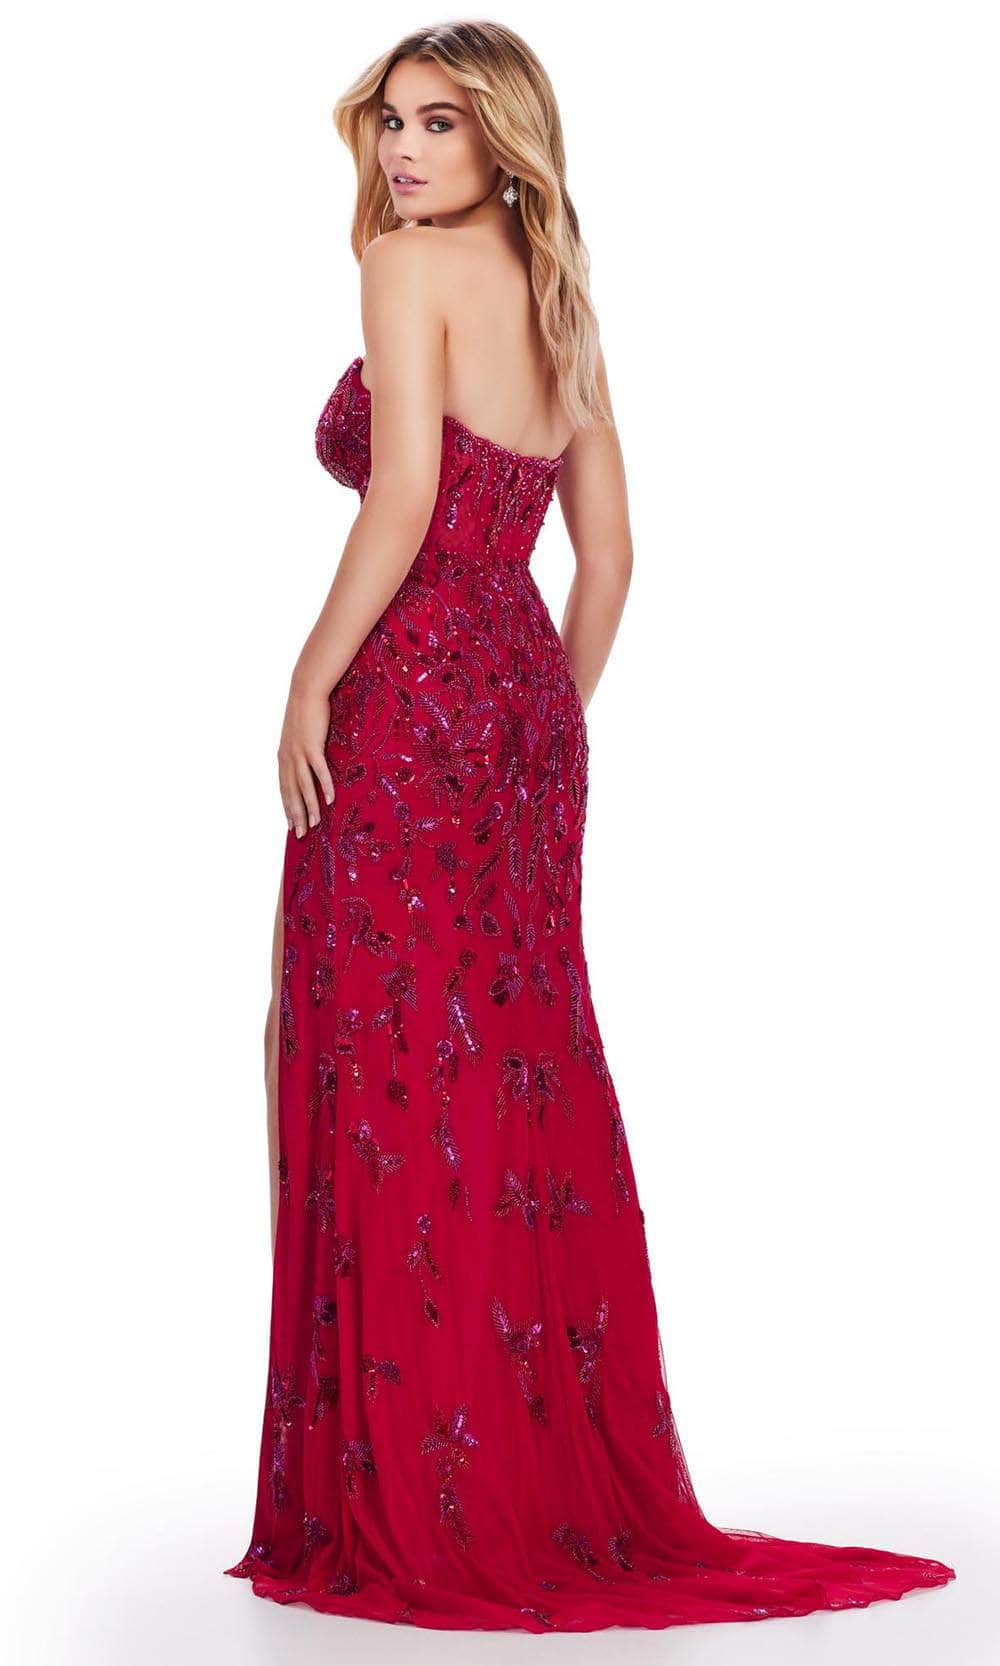 Ashley Lauren 11614 - V-Neck Fully Beaded Evening Gown Evening Dresses